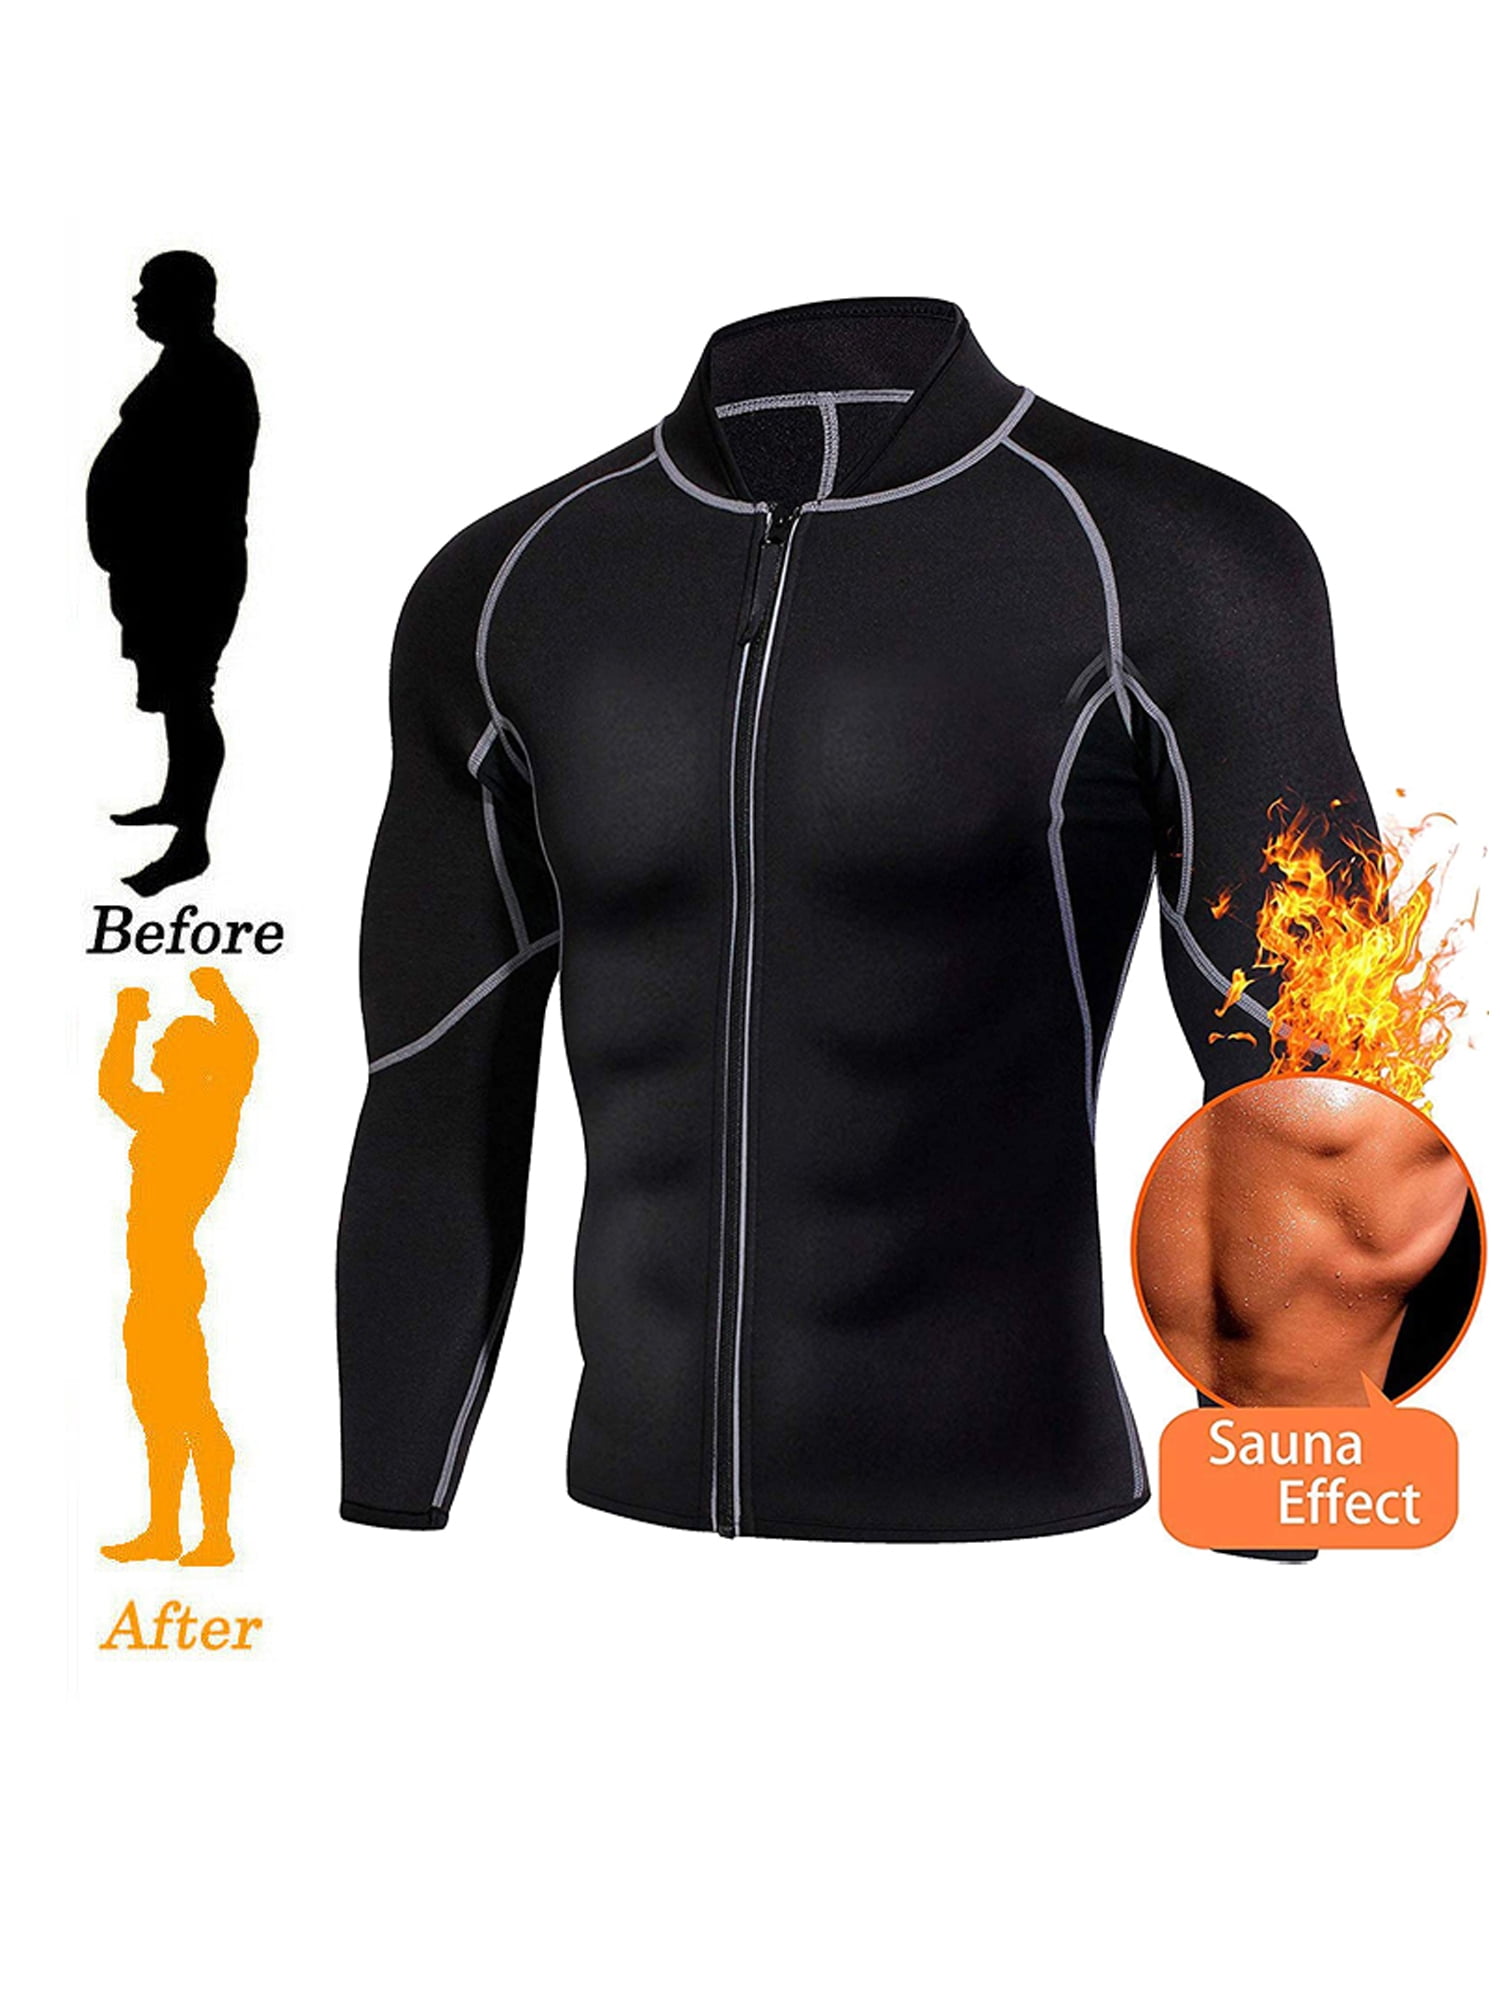 Hot Sauna Workout Shirt Long Zipper Neoprene Sauna Jacket Women Sauna Suit Weight Loss Belly Fat Waist Trainer L&Sports Sauna Sweat Top Shirt Women Long Sleeve 